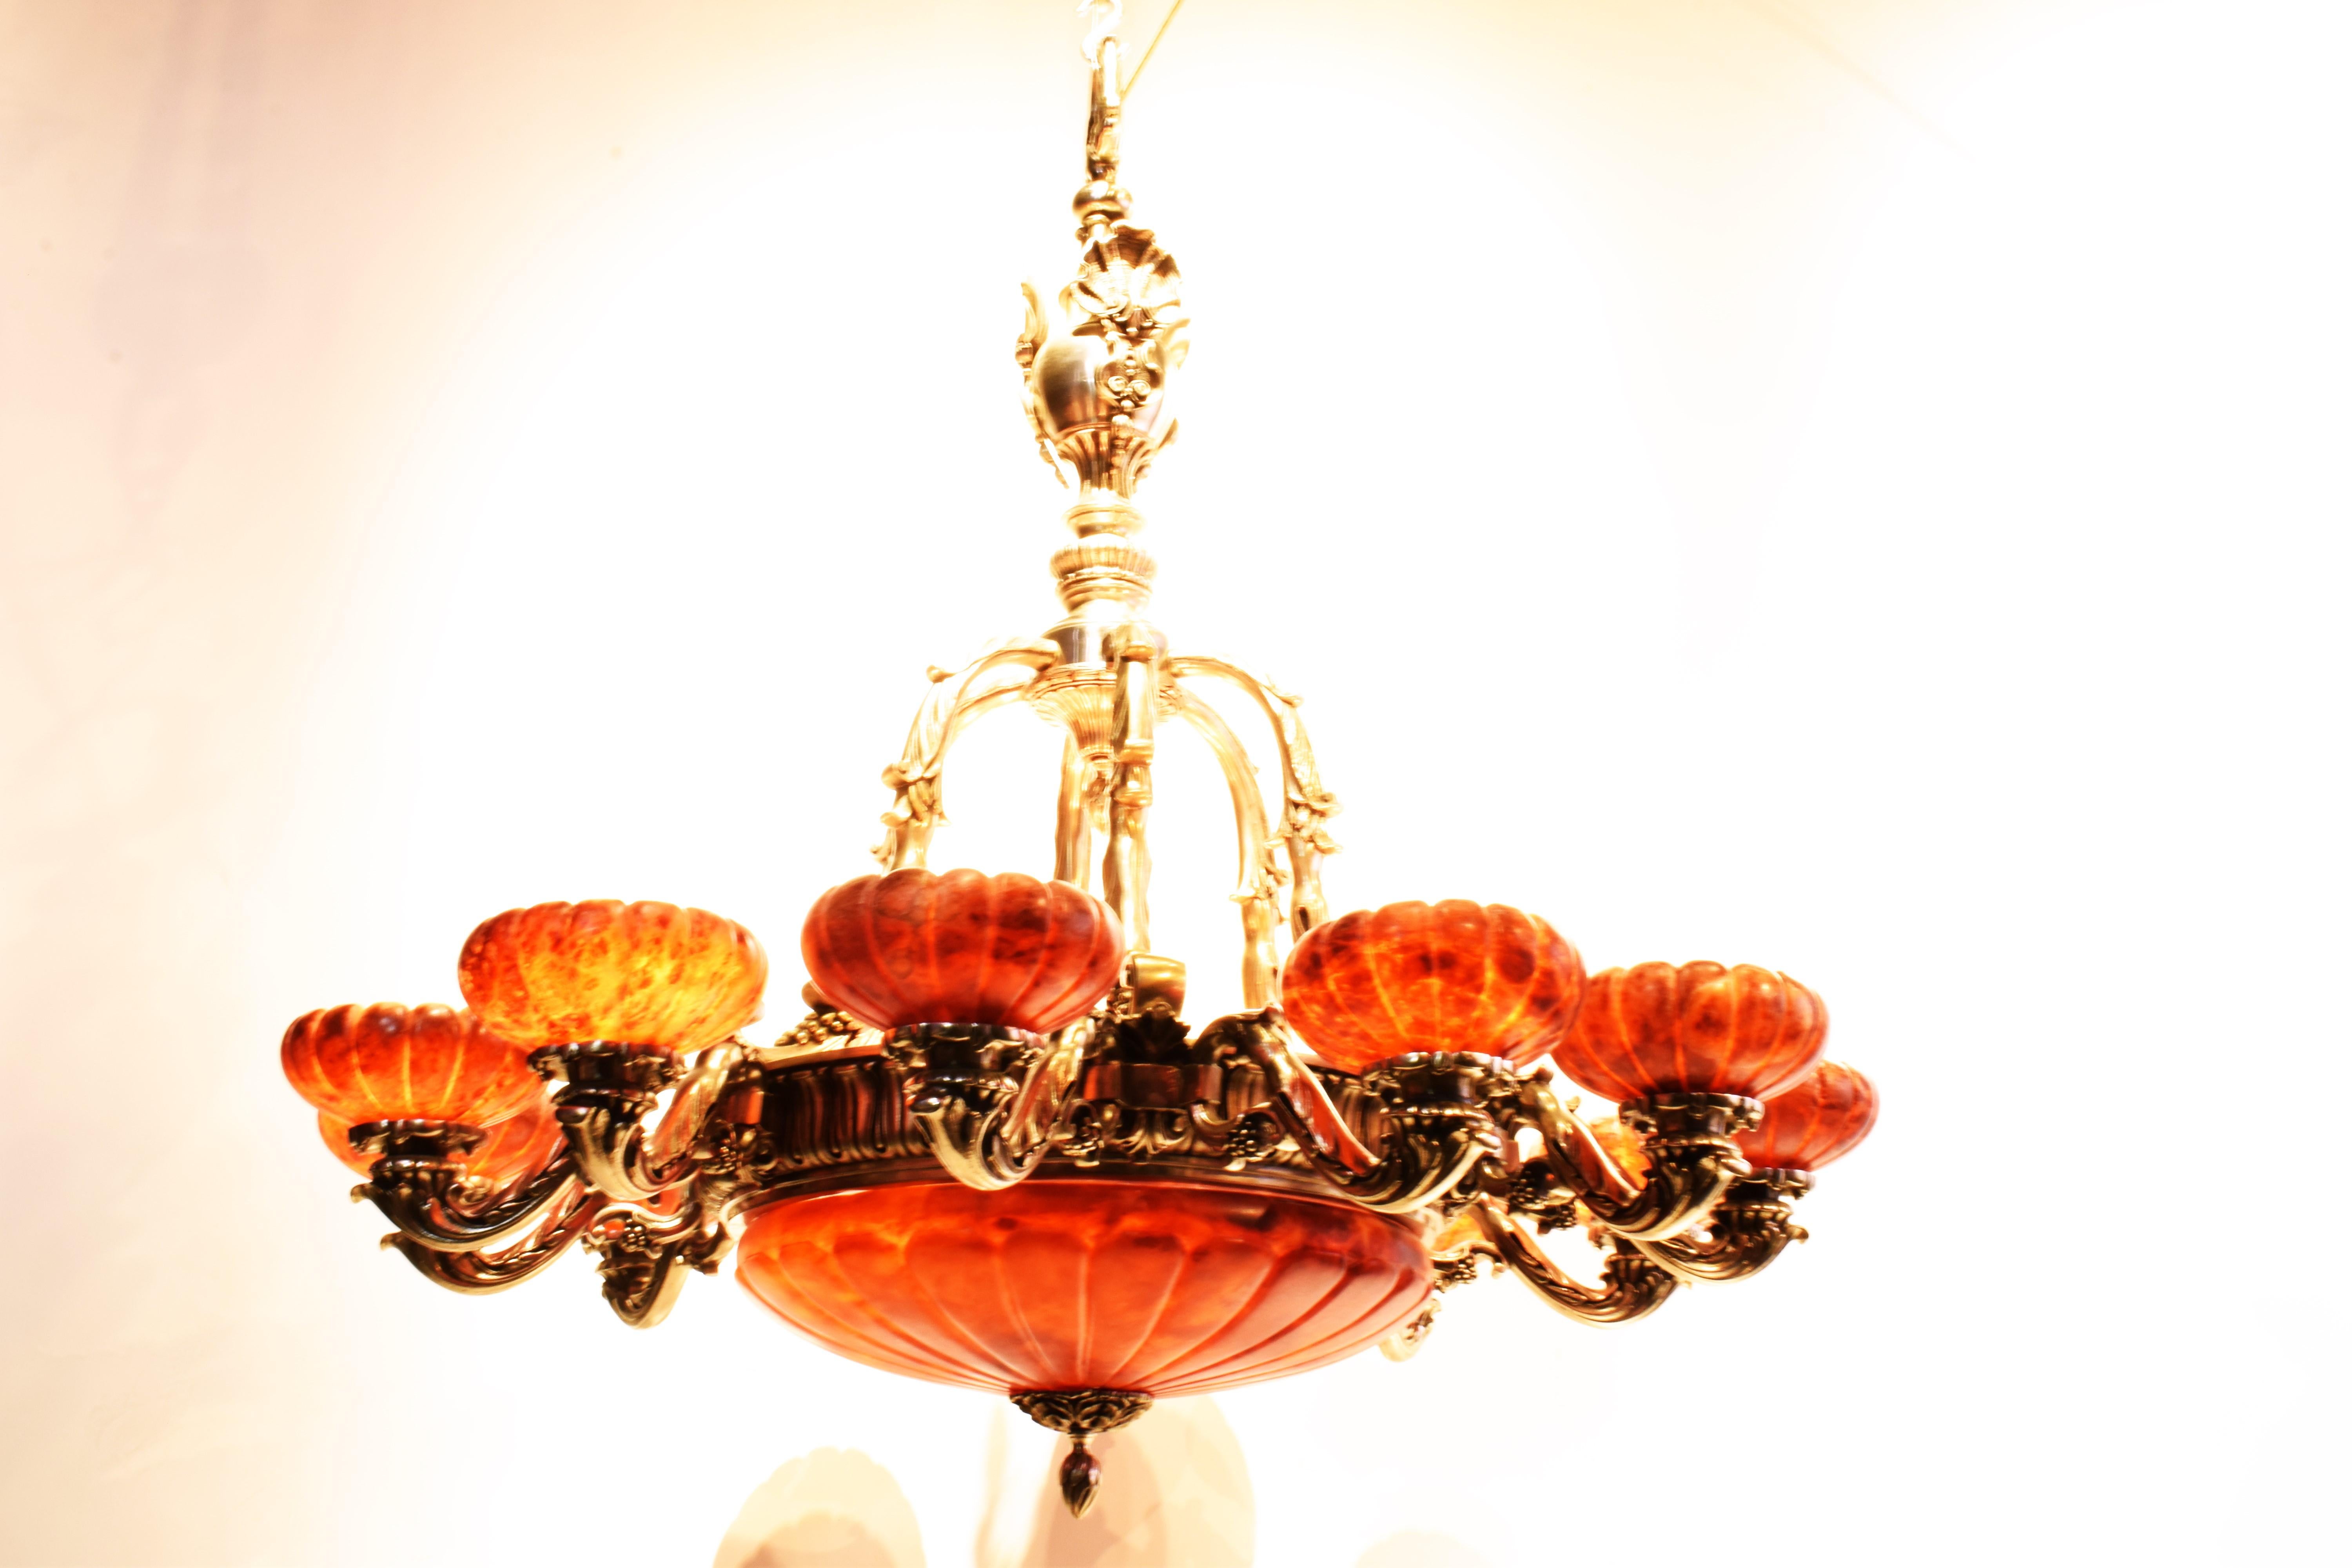 Ein sehr feiner Silber über Bronze & Alabaster Kronleuchter im Louis XVI Geschmack mit gedrehter & handgeschnittener Alabasterkuppel & Schirmen (12). 
16 Lichter (4 in der Kuppel, 12 beleuchtete Arme)
Frankreich, um 1920
Abmessungen: Höhe 46